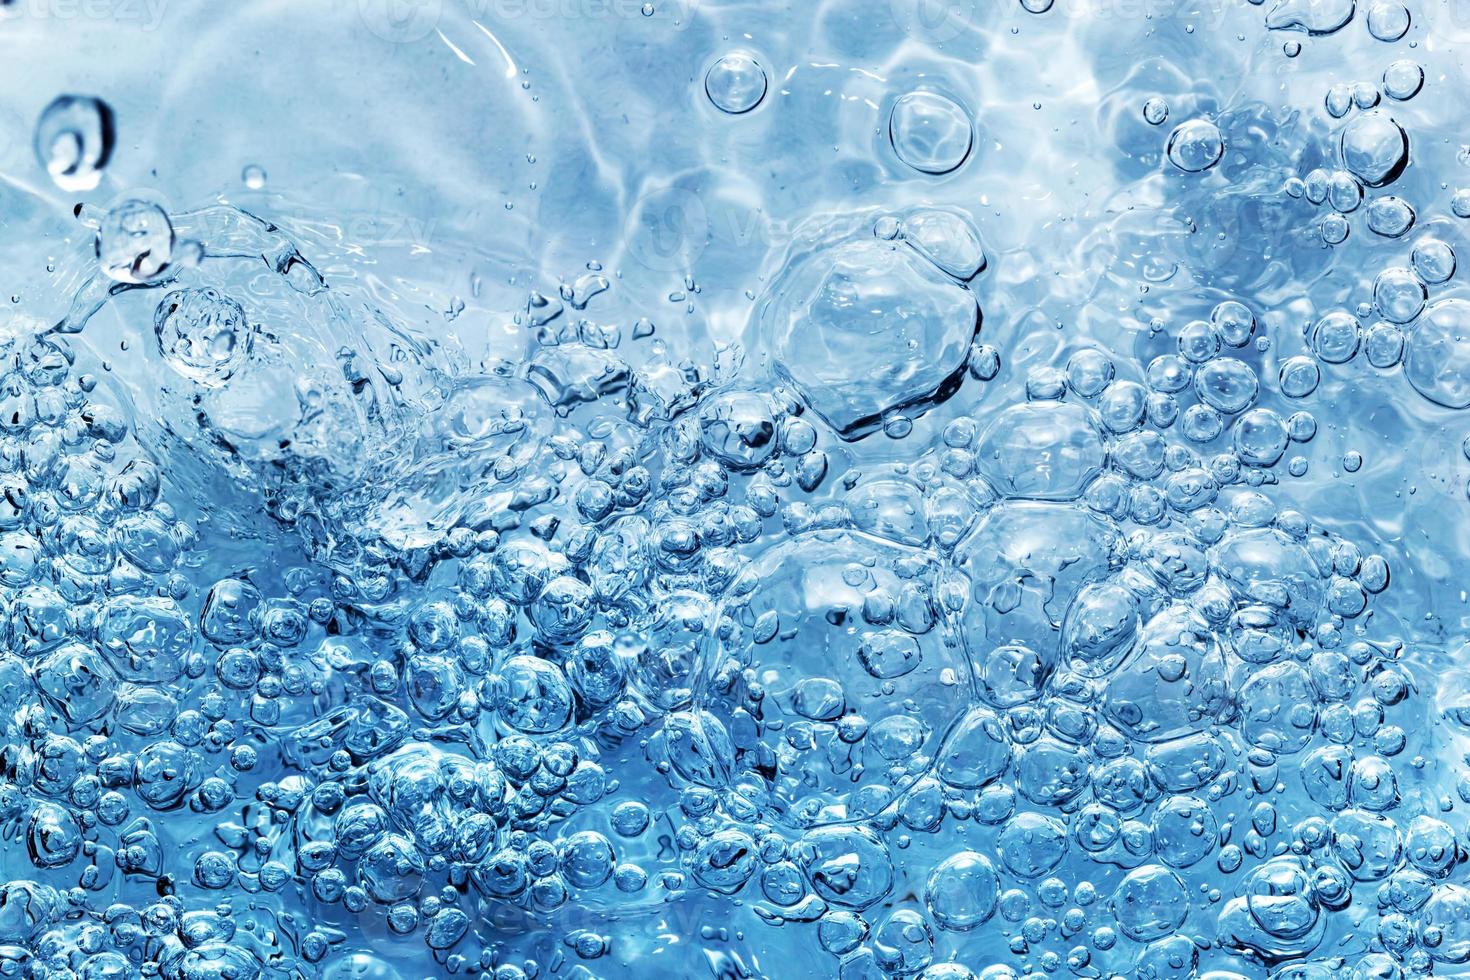 água limpa com bolhas aparecendo ao derramar água ou um respingo foto